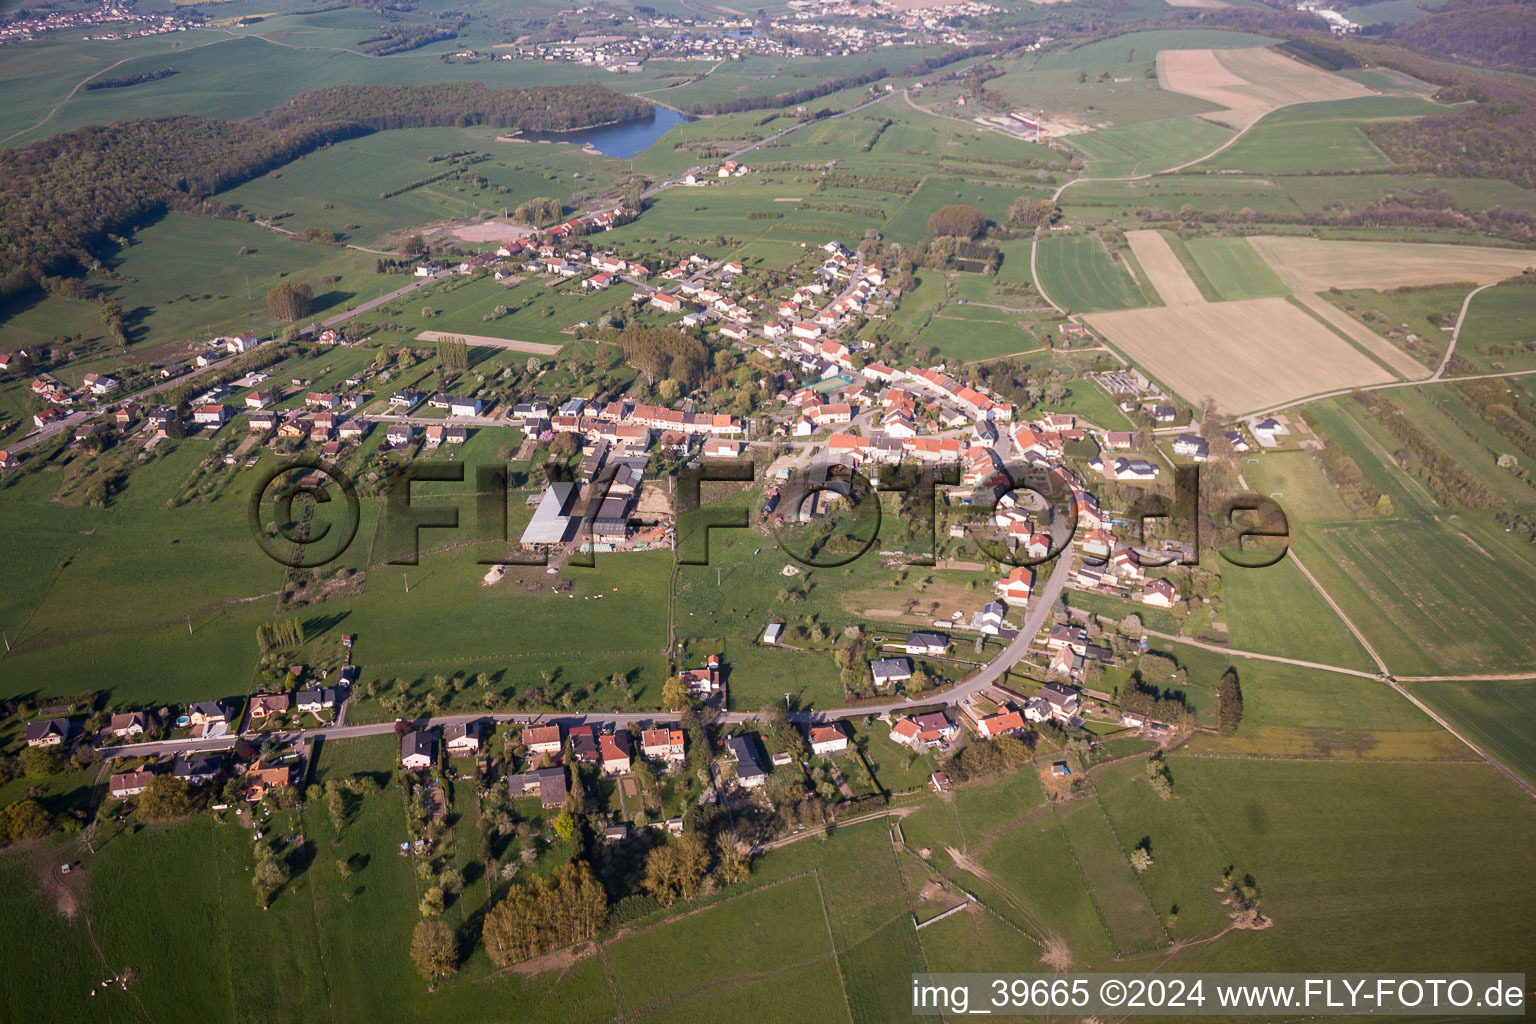 Vue aérienne de Champs agricoles et surfaces utilisables à Macheren dans le département Moselle, France